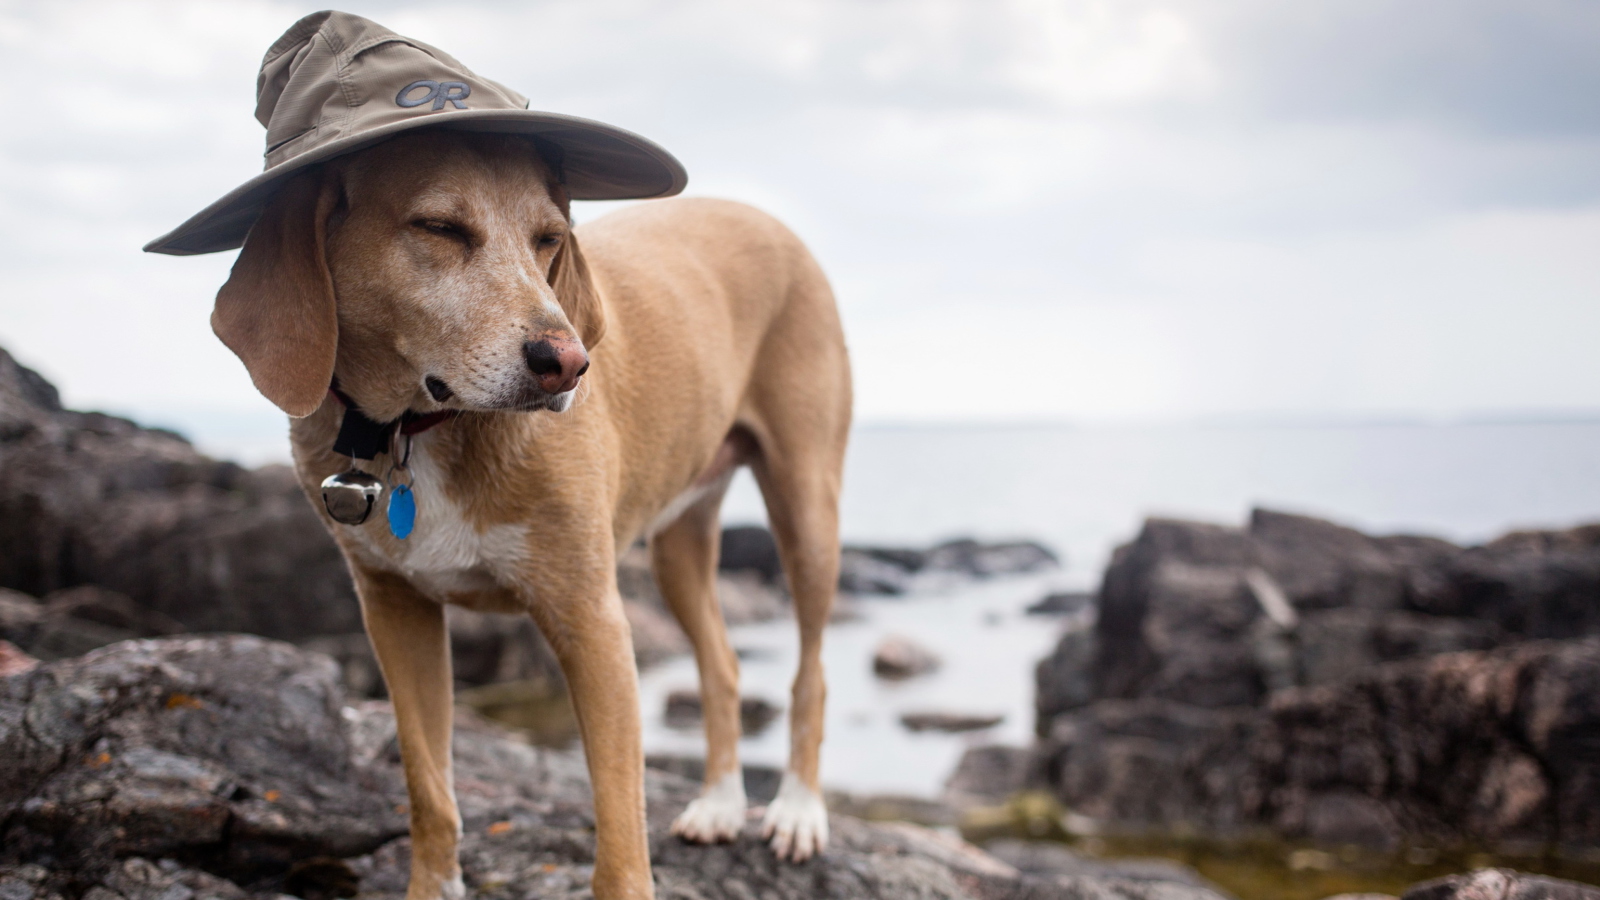 Sfondi Dog In Funny Wizard Style Hat 1600x900